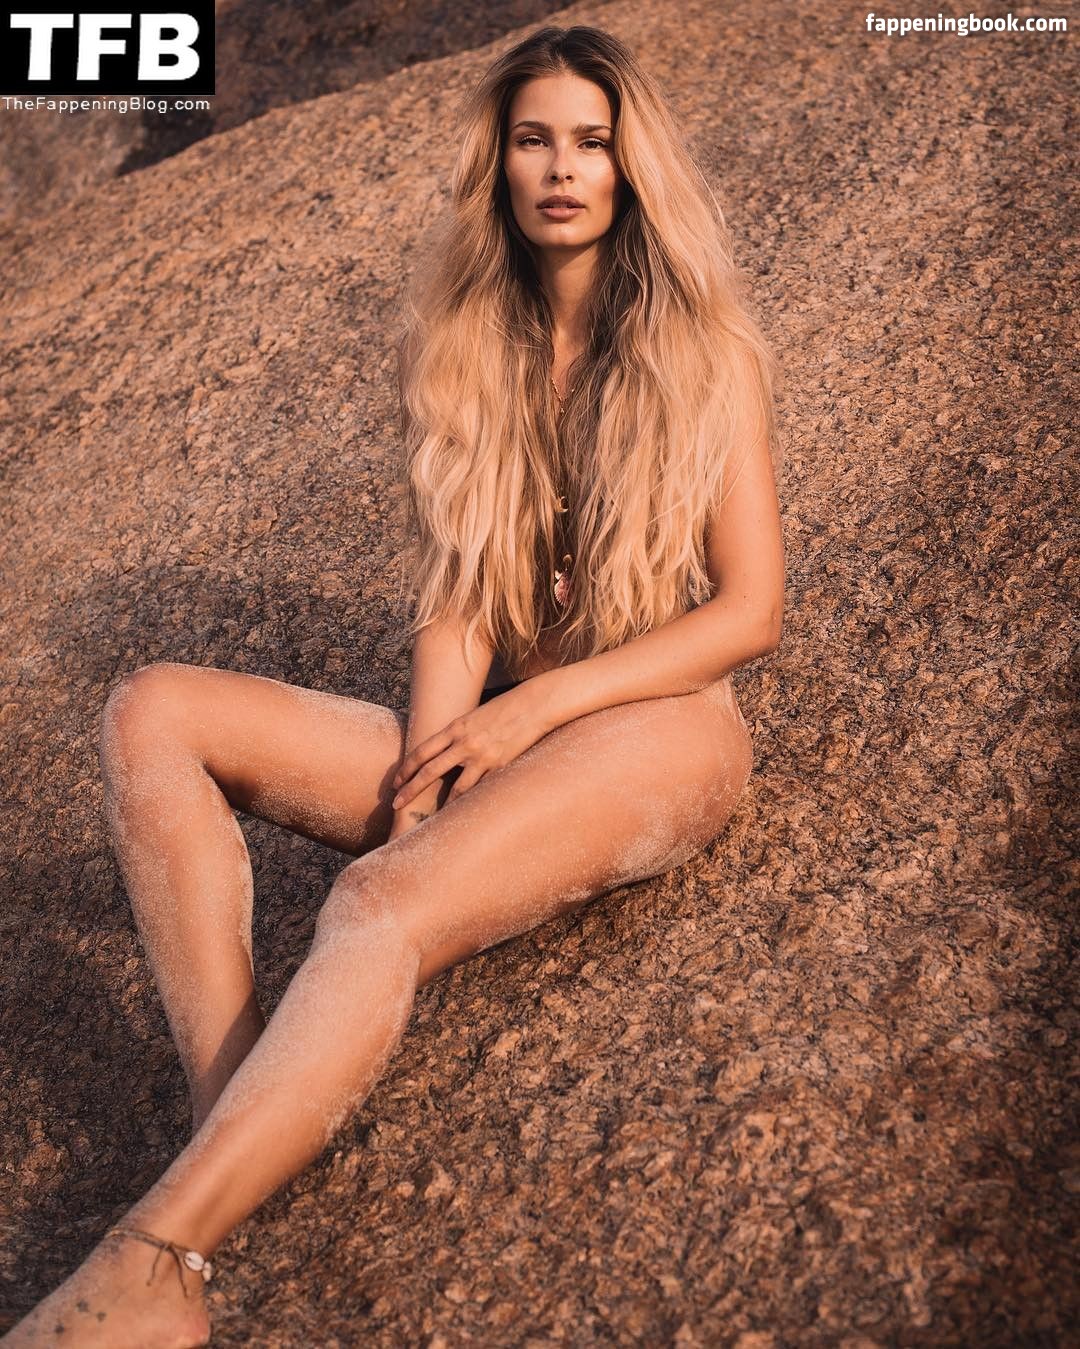 Yasmin Brunet Nude